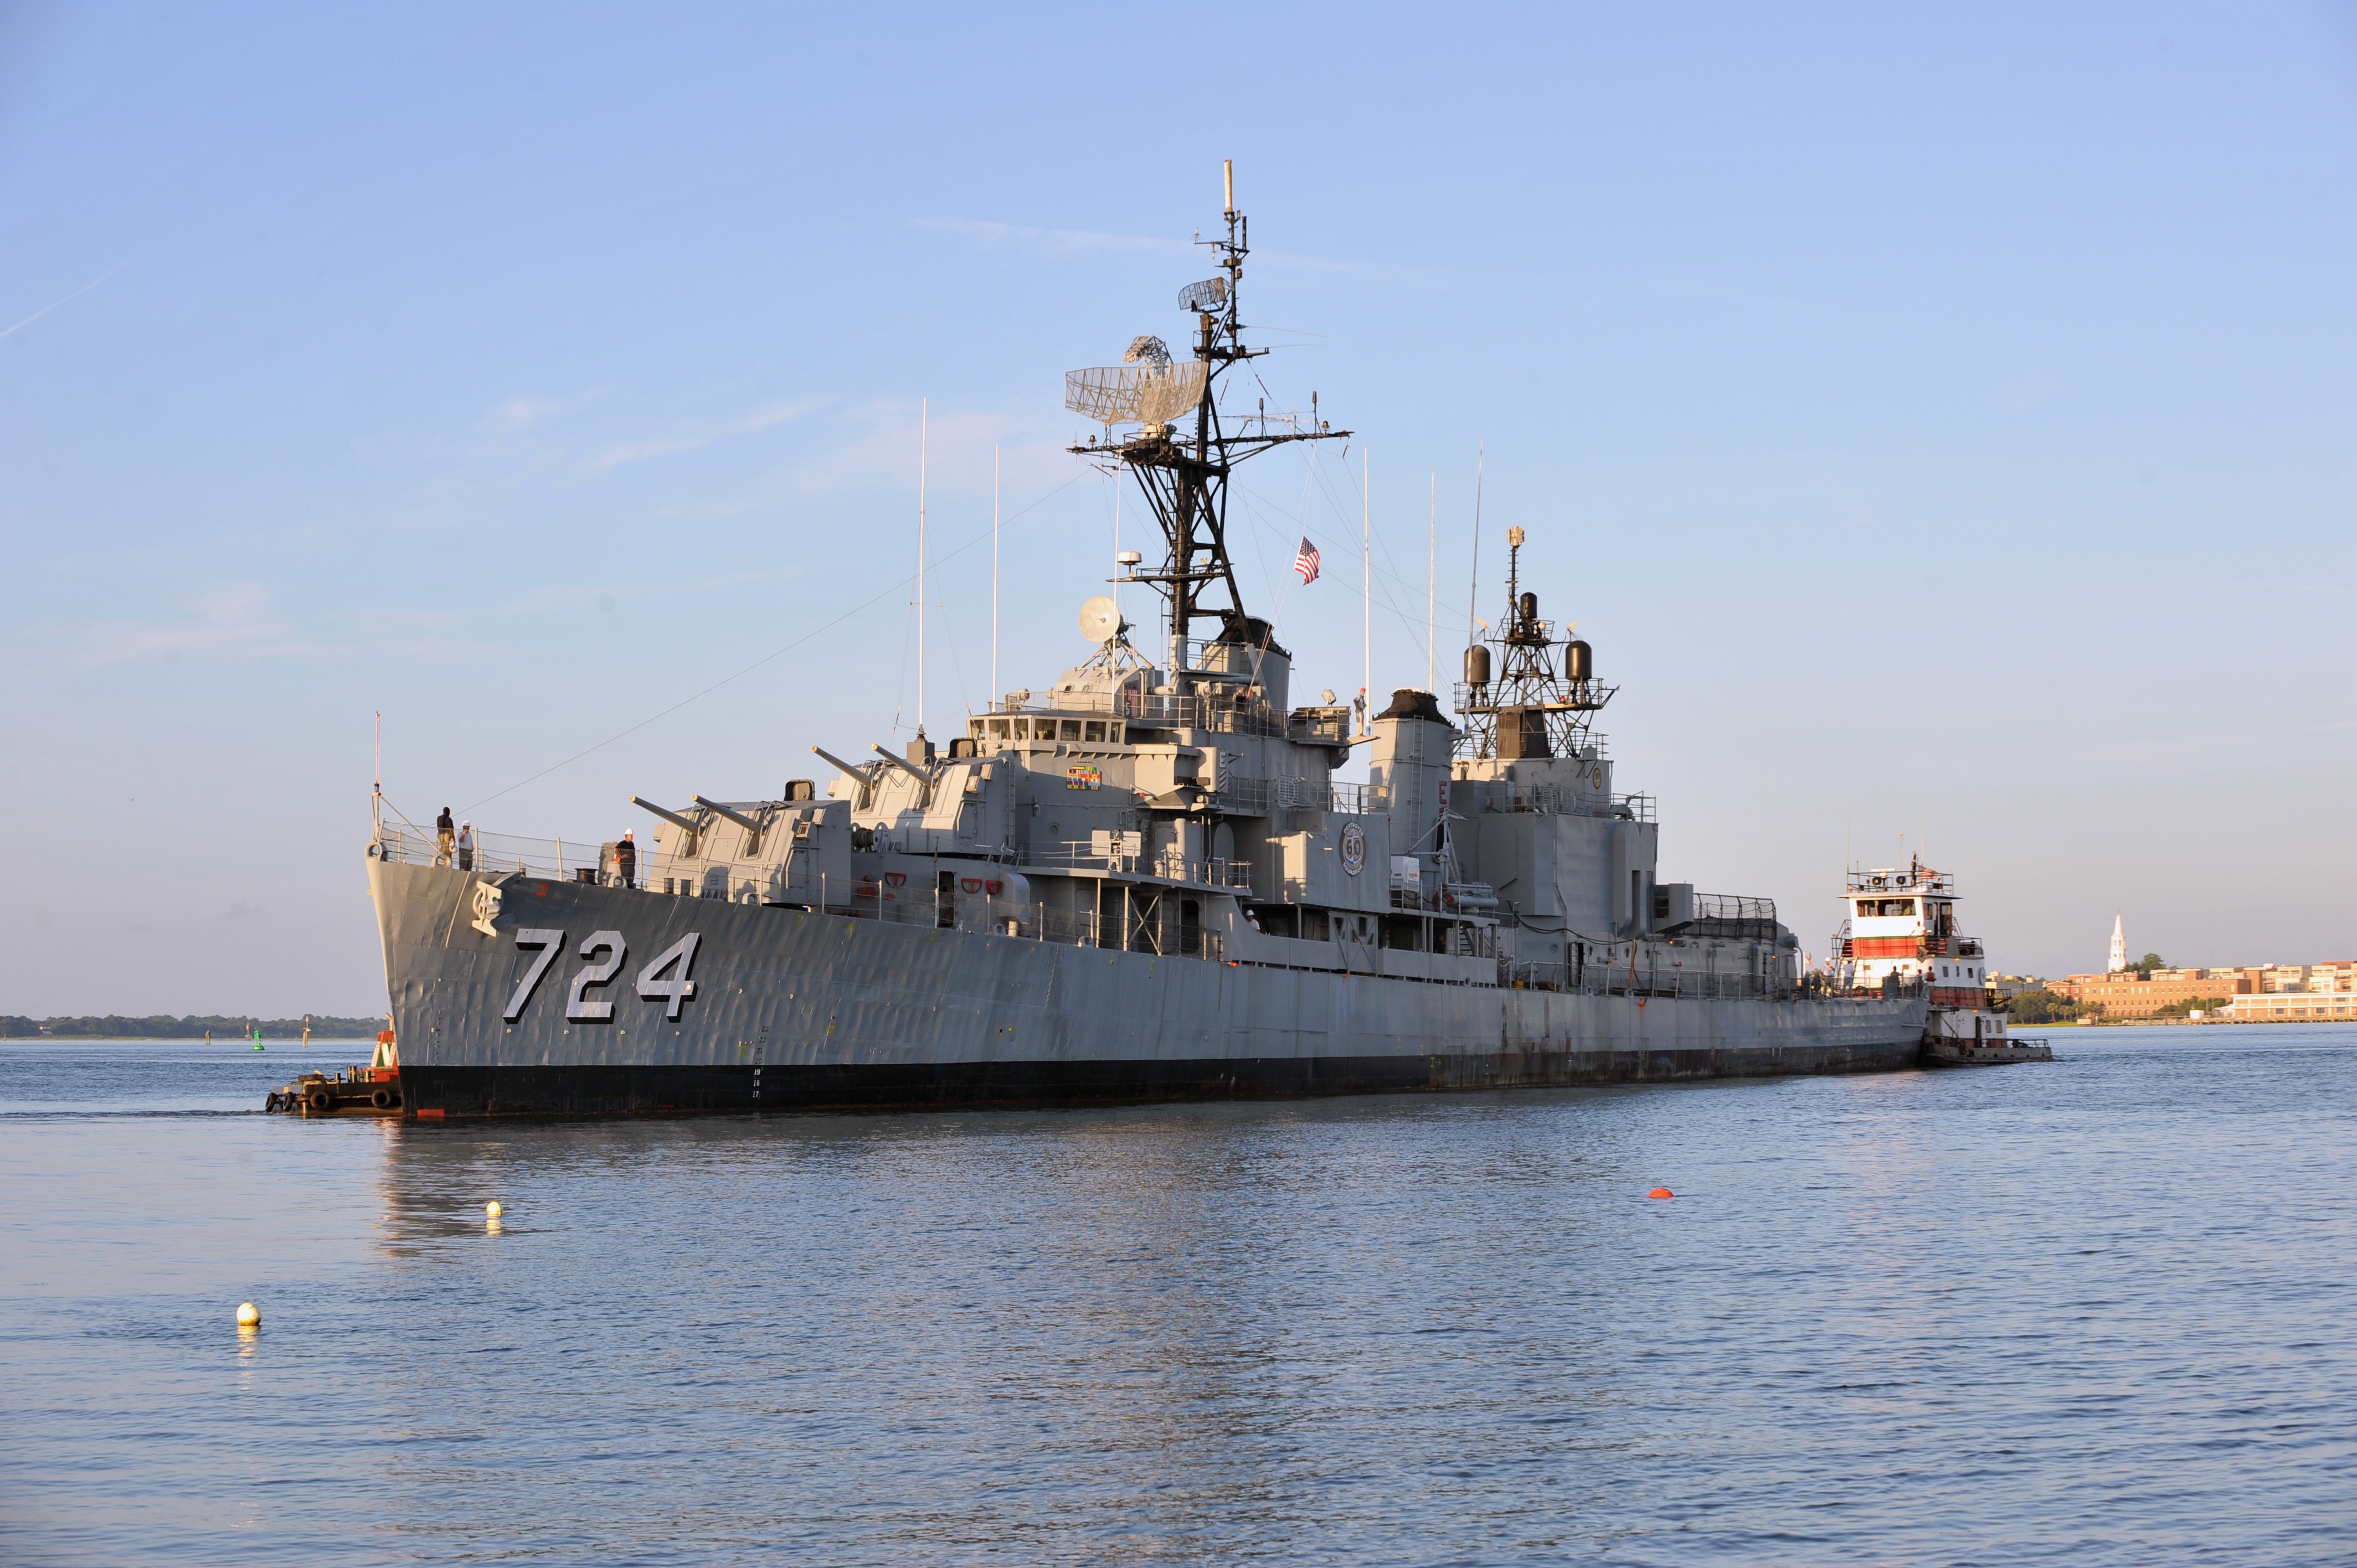 USS Laffey today